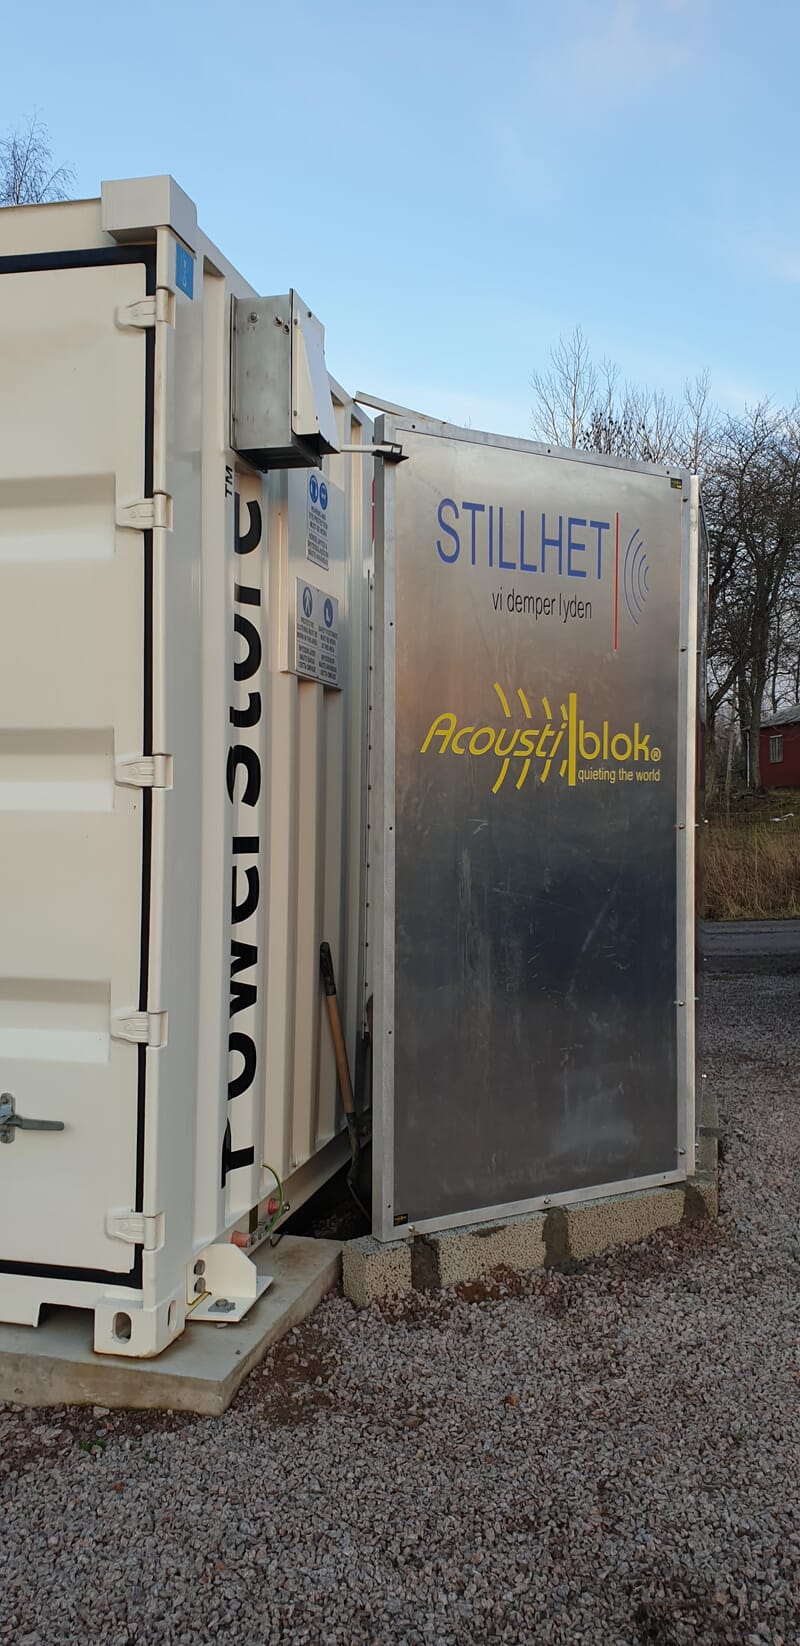 Bullerreducering projekt, Vattenfall i Sverige.